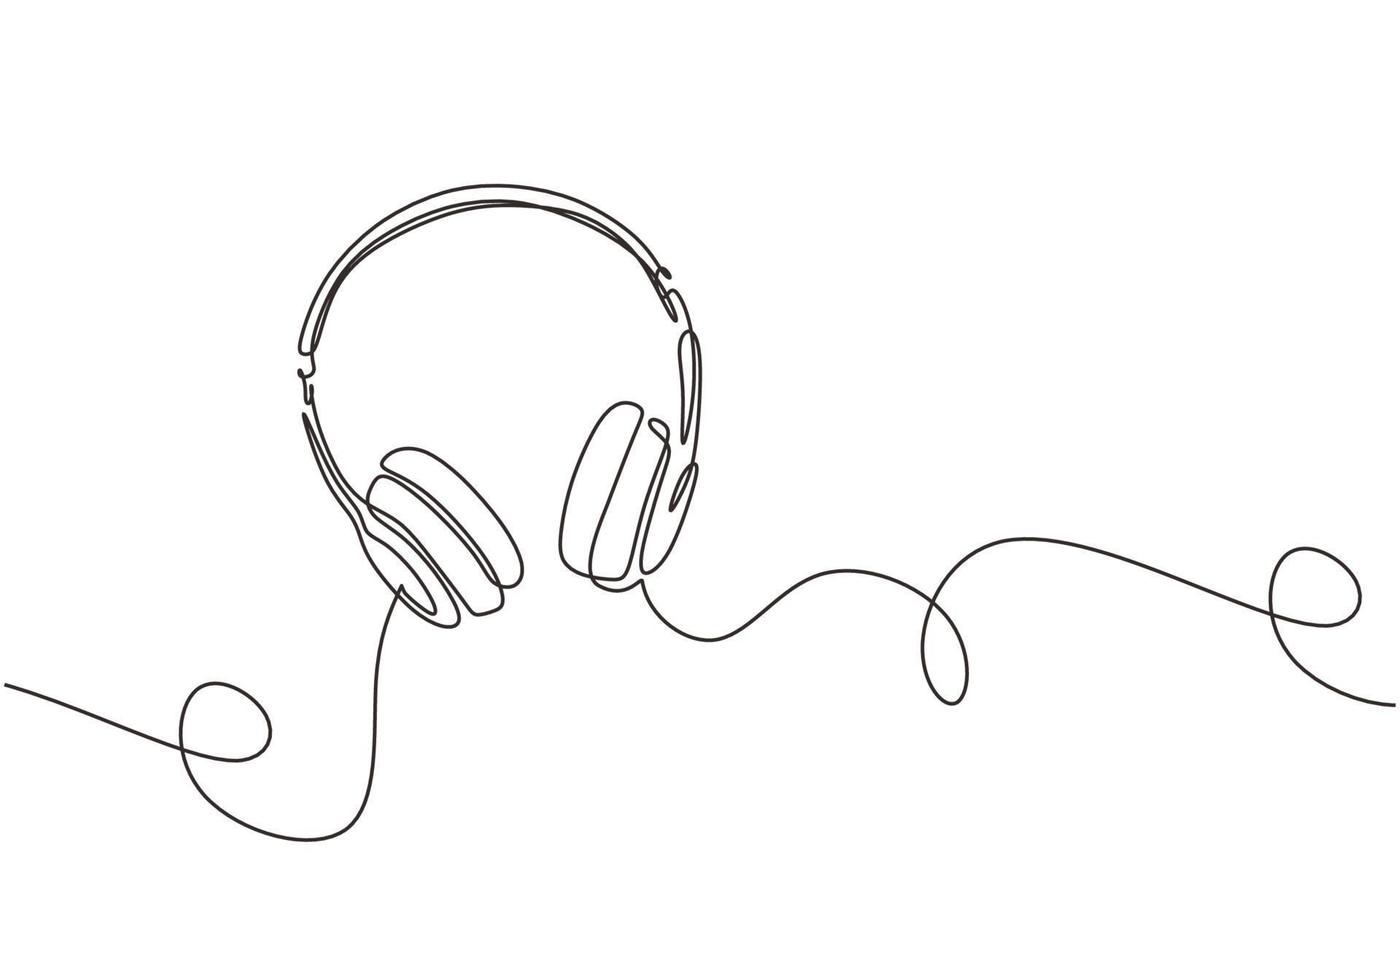 dessin au trait continu de musique avec gadget pour casque vecteur